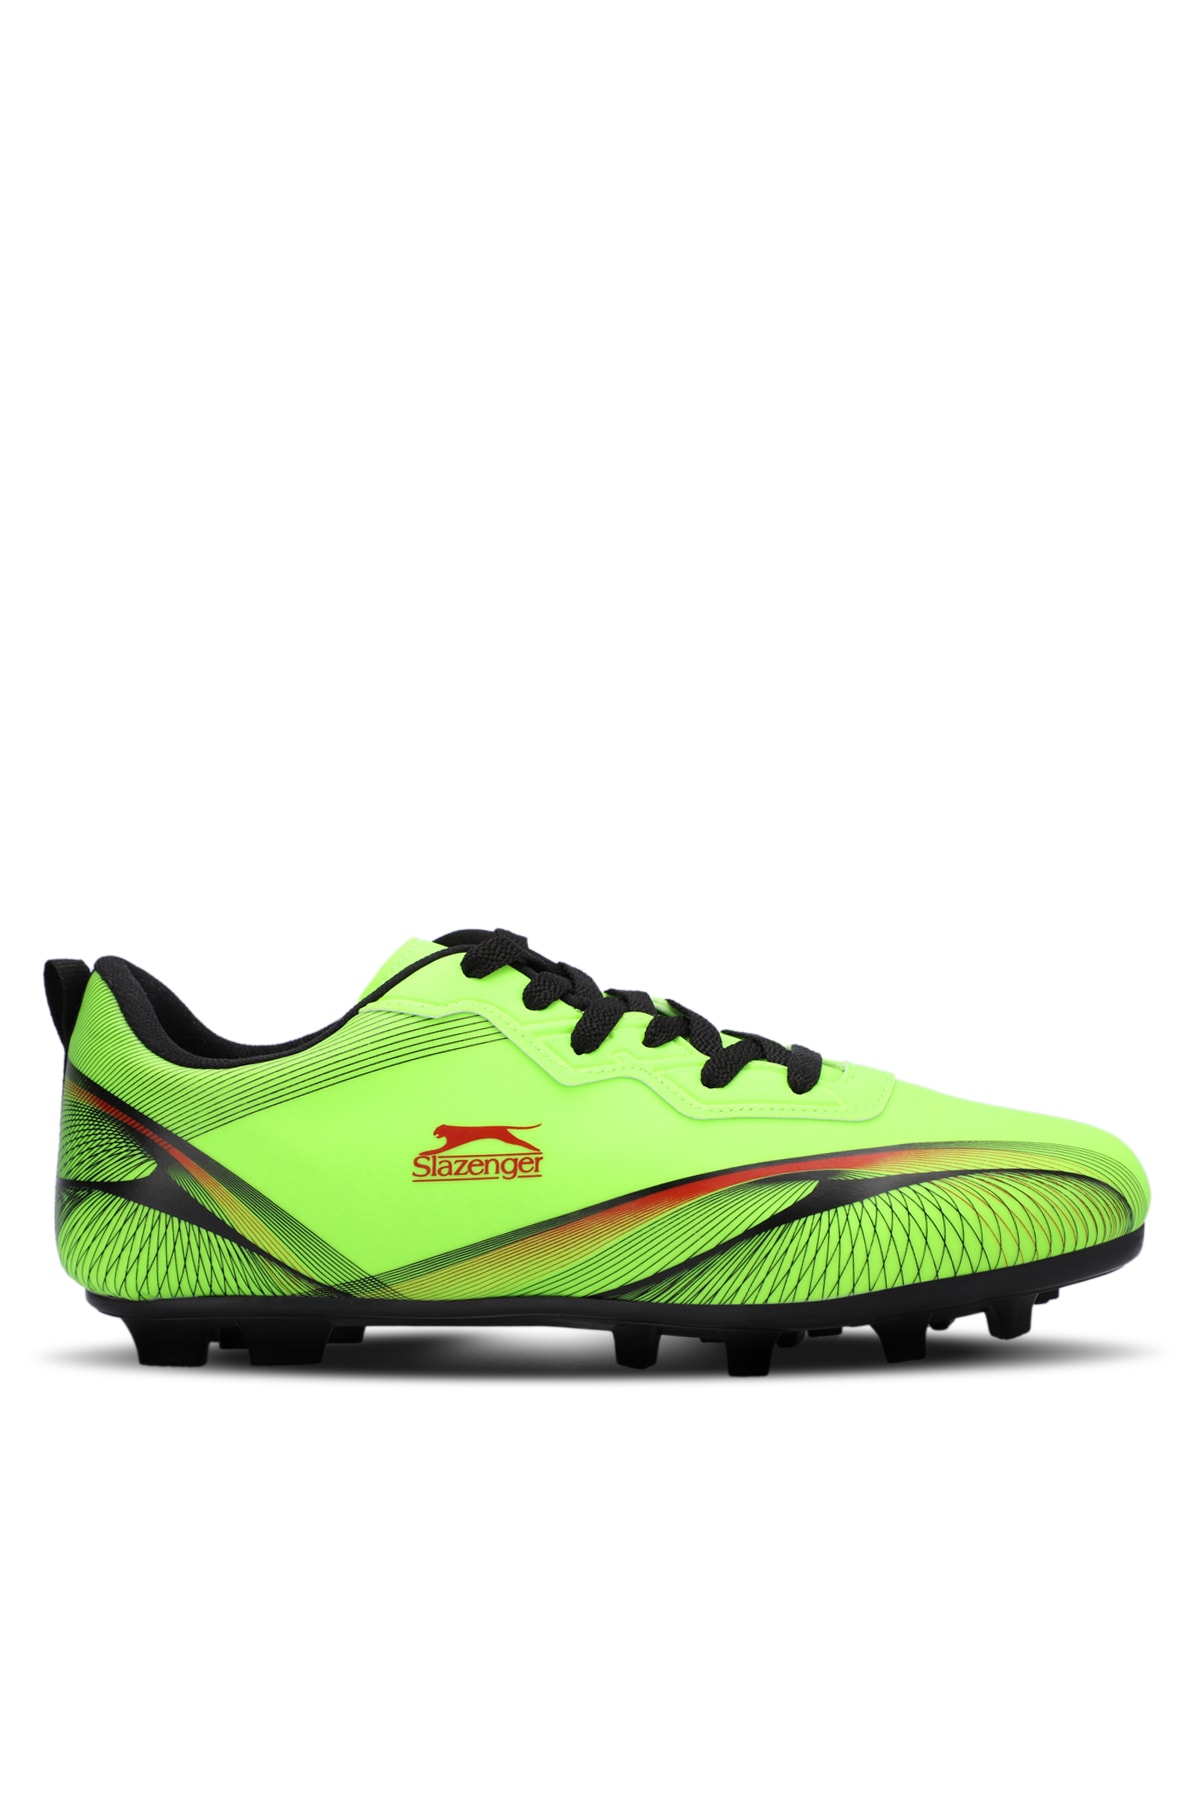 Slazenger Marcell Krp Mens Football Soccer Shoes Green